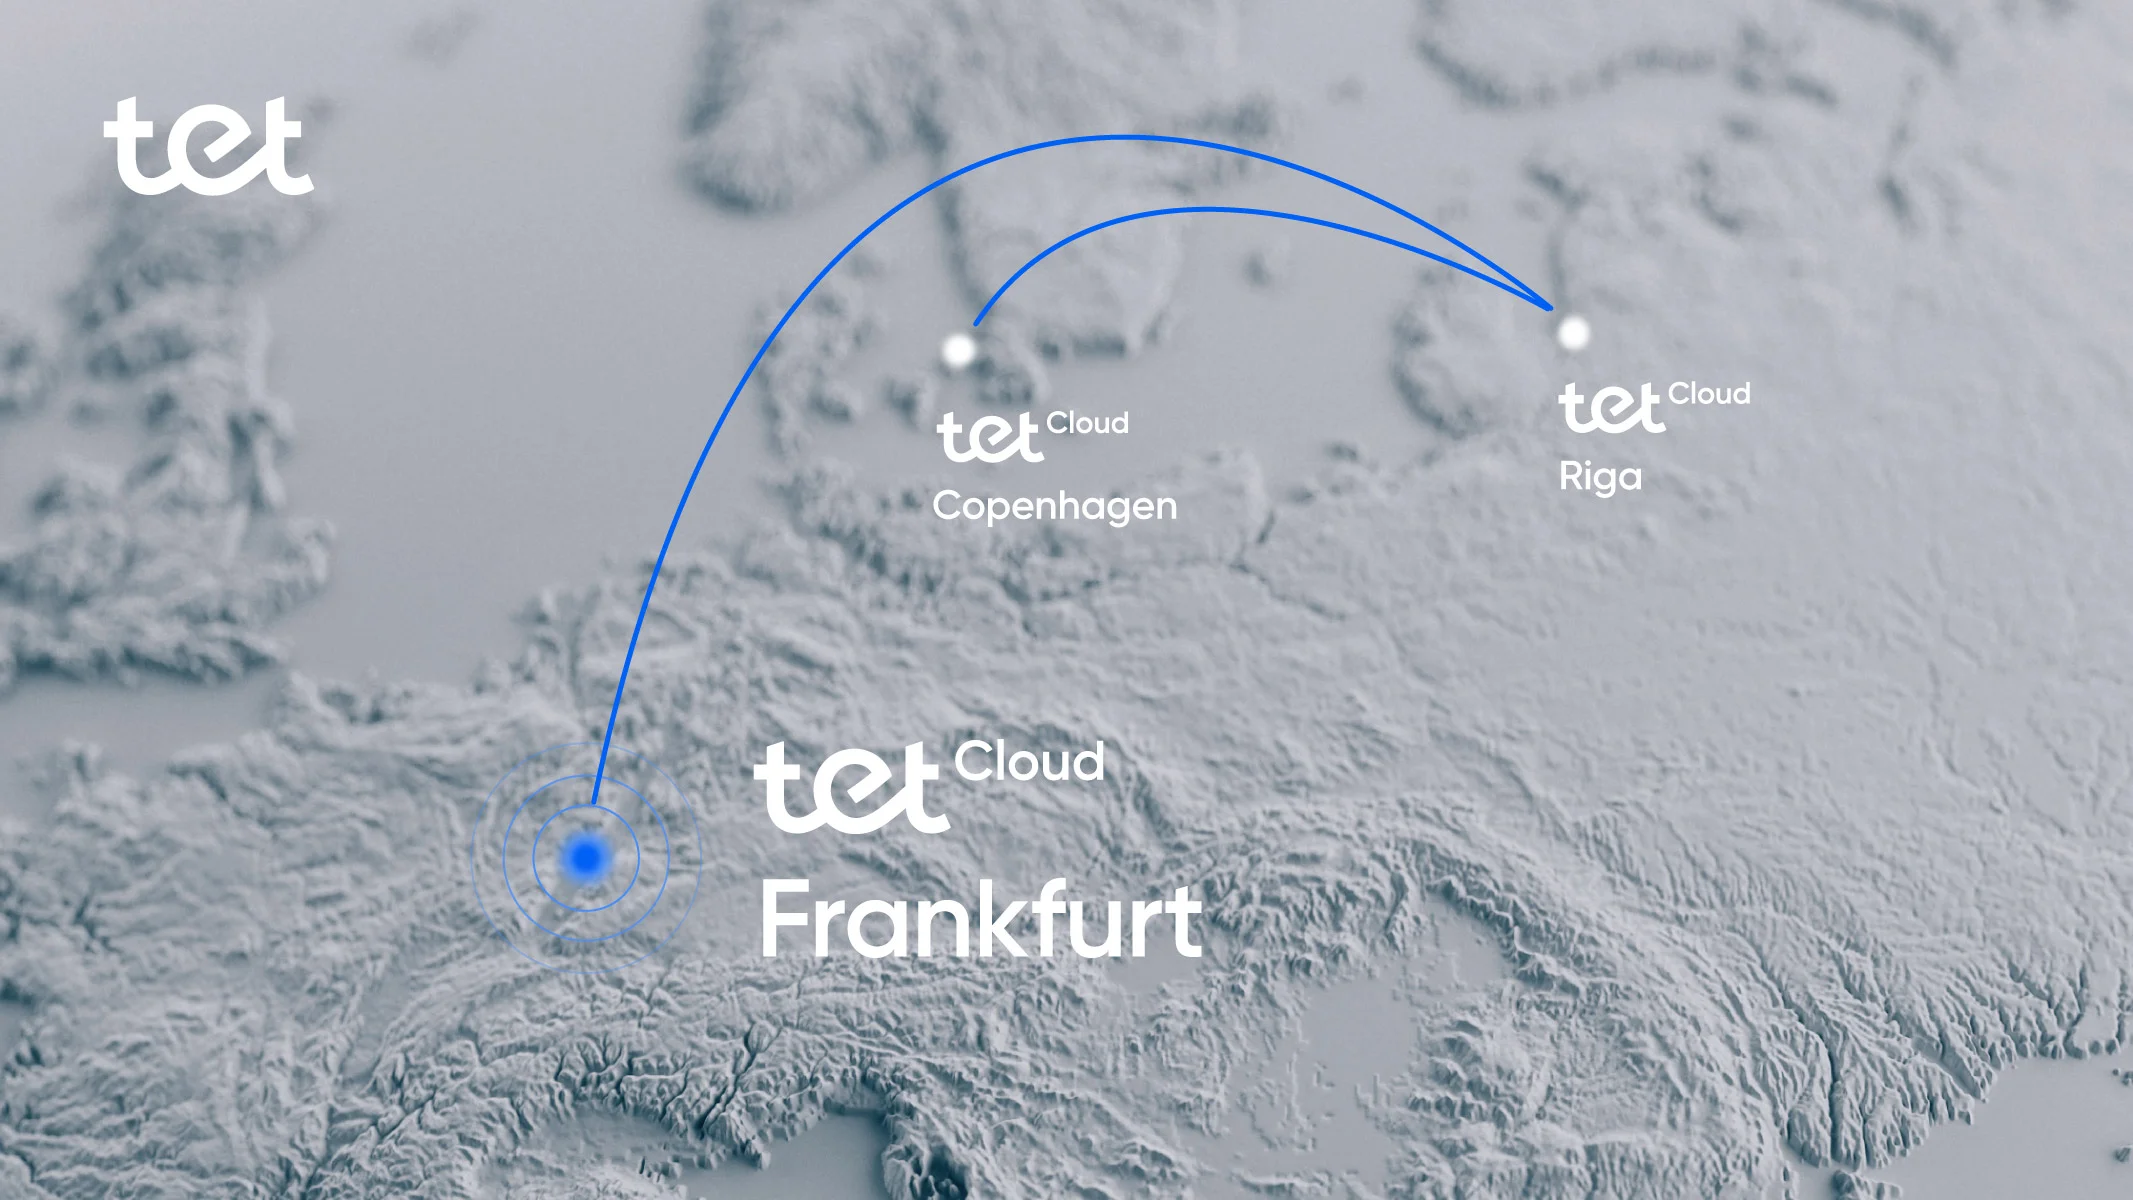 Tet завершив розгортання інфраструктури хмарної платформи Tet Cloud в Німеччині